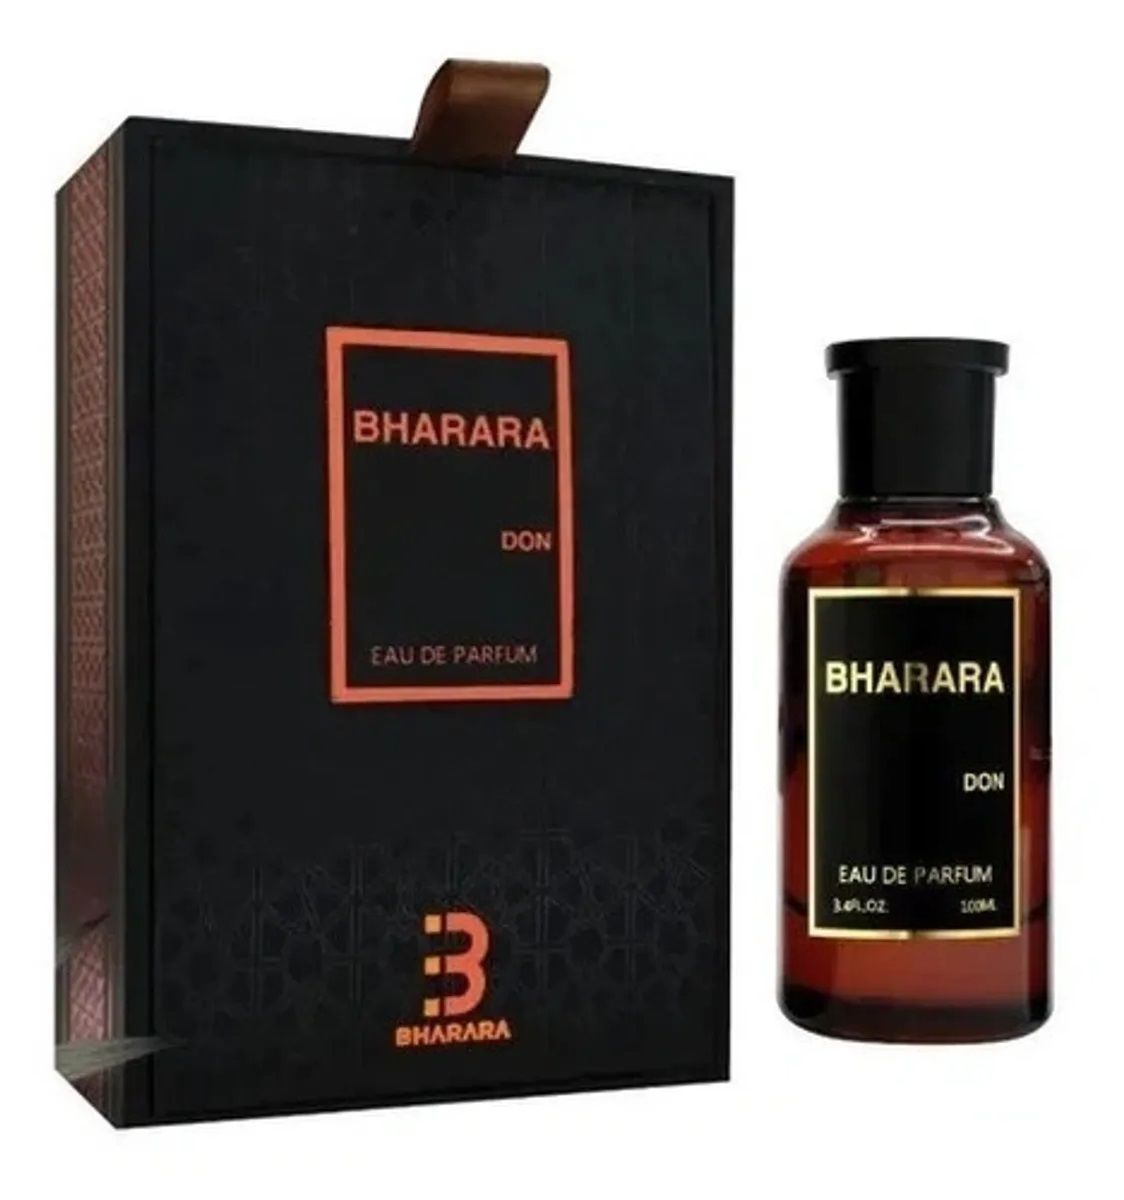 Bharara Don Masculino Eau de Parfum 100ml - imagem 2